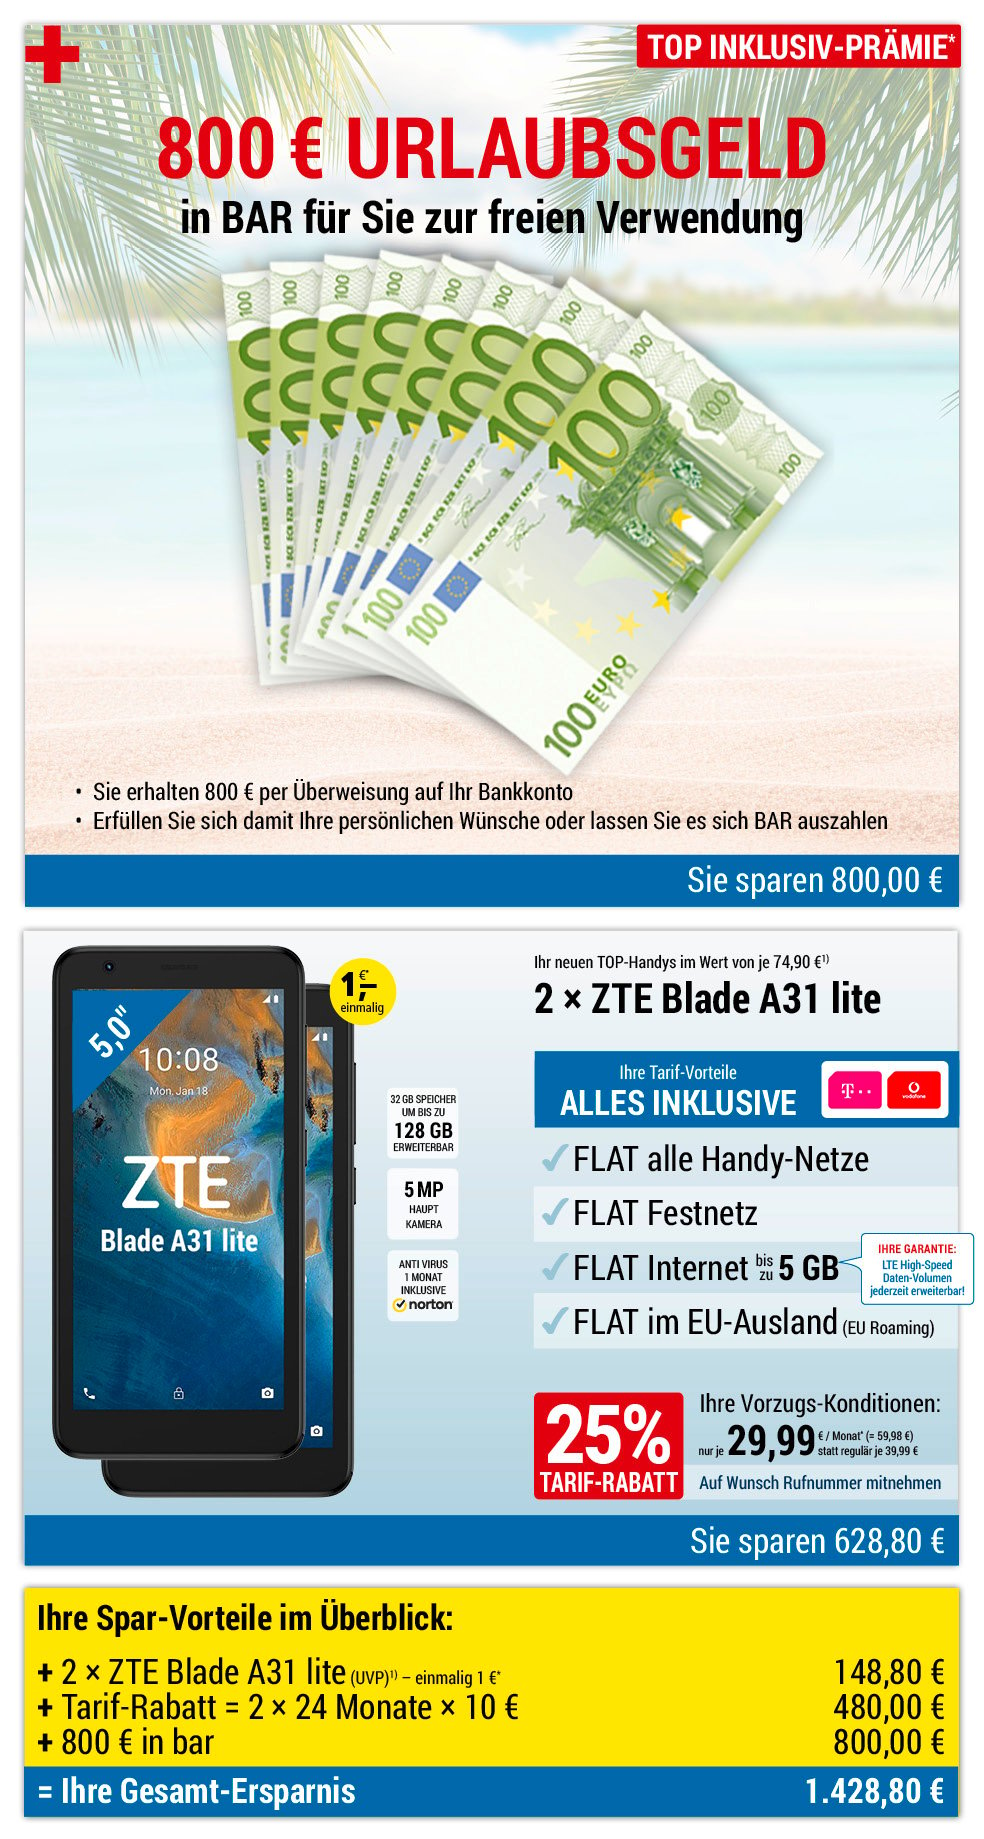 Für nur 1 €*: 2 × ZTE Blade A31 lite + 800 € bar INKLUSIVE + Handyverträge mit ALL NET FLAT für je 29,99 €/Monat